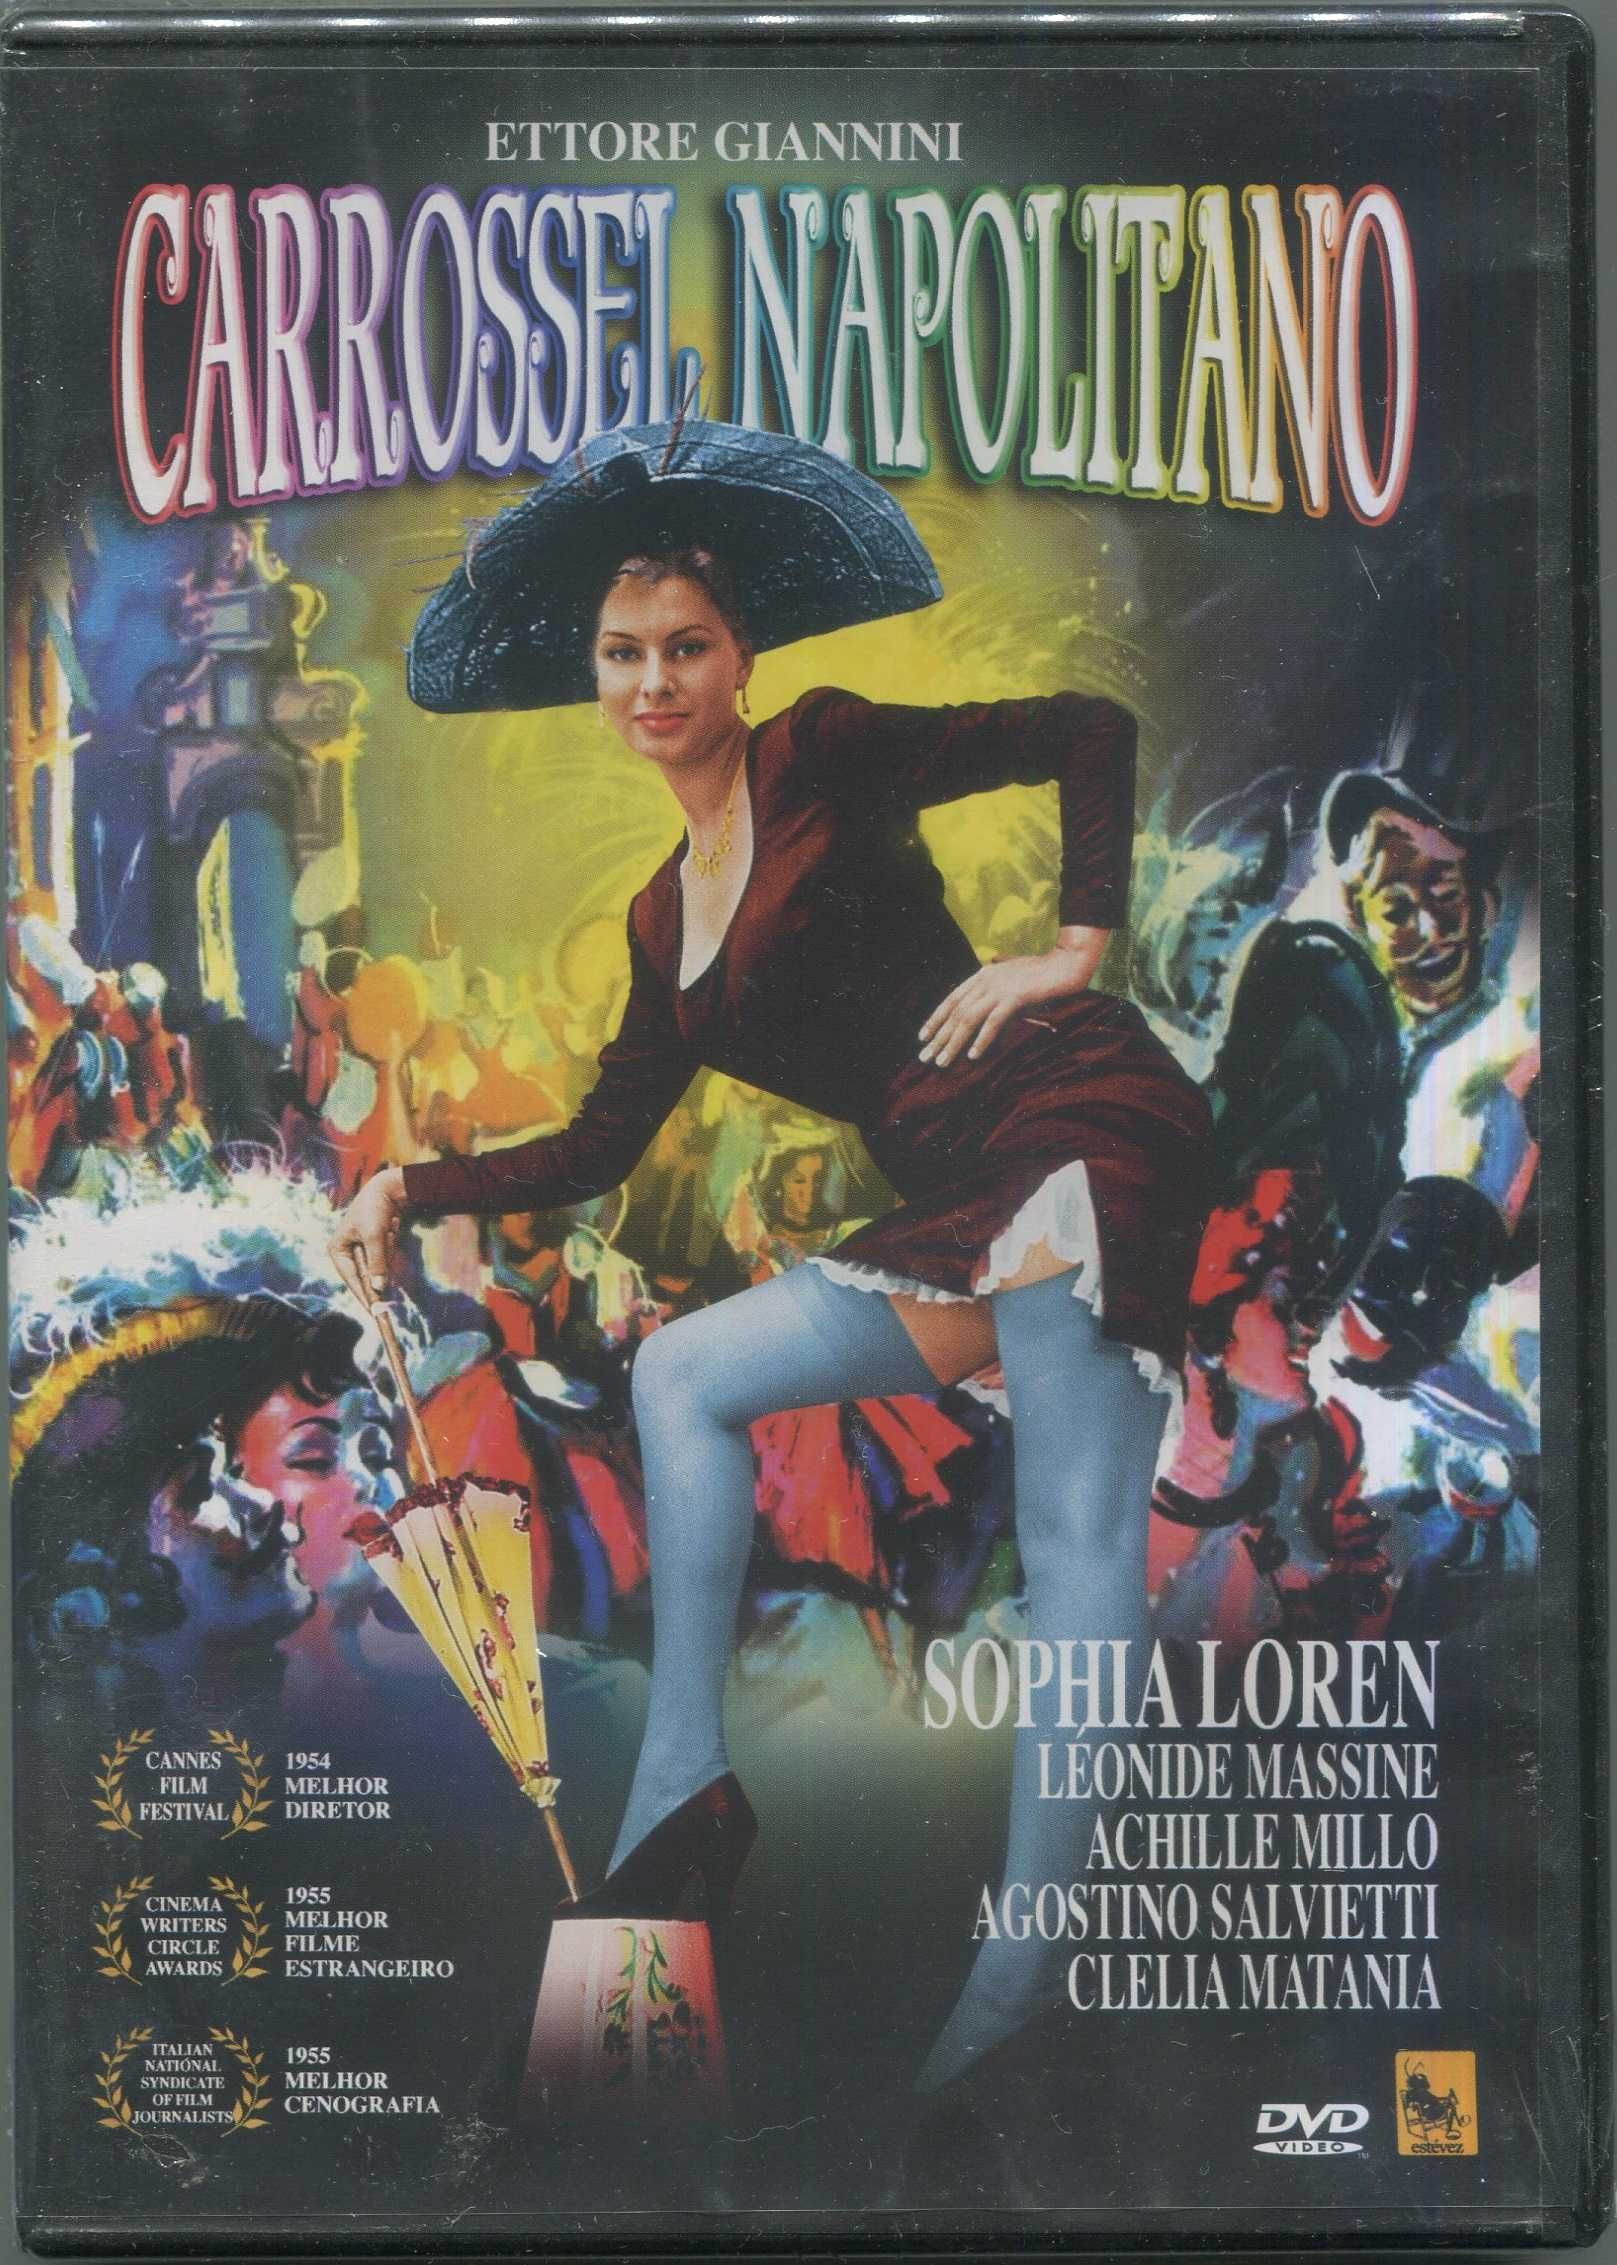 Carrossel Napolitano – Novo/Selado c/Sophia Loren